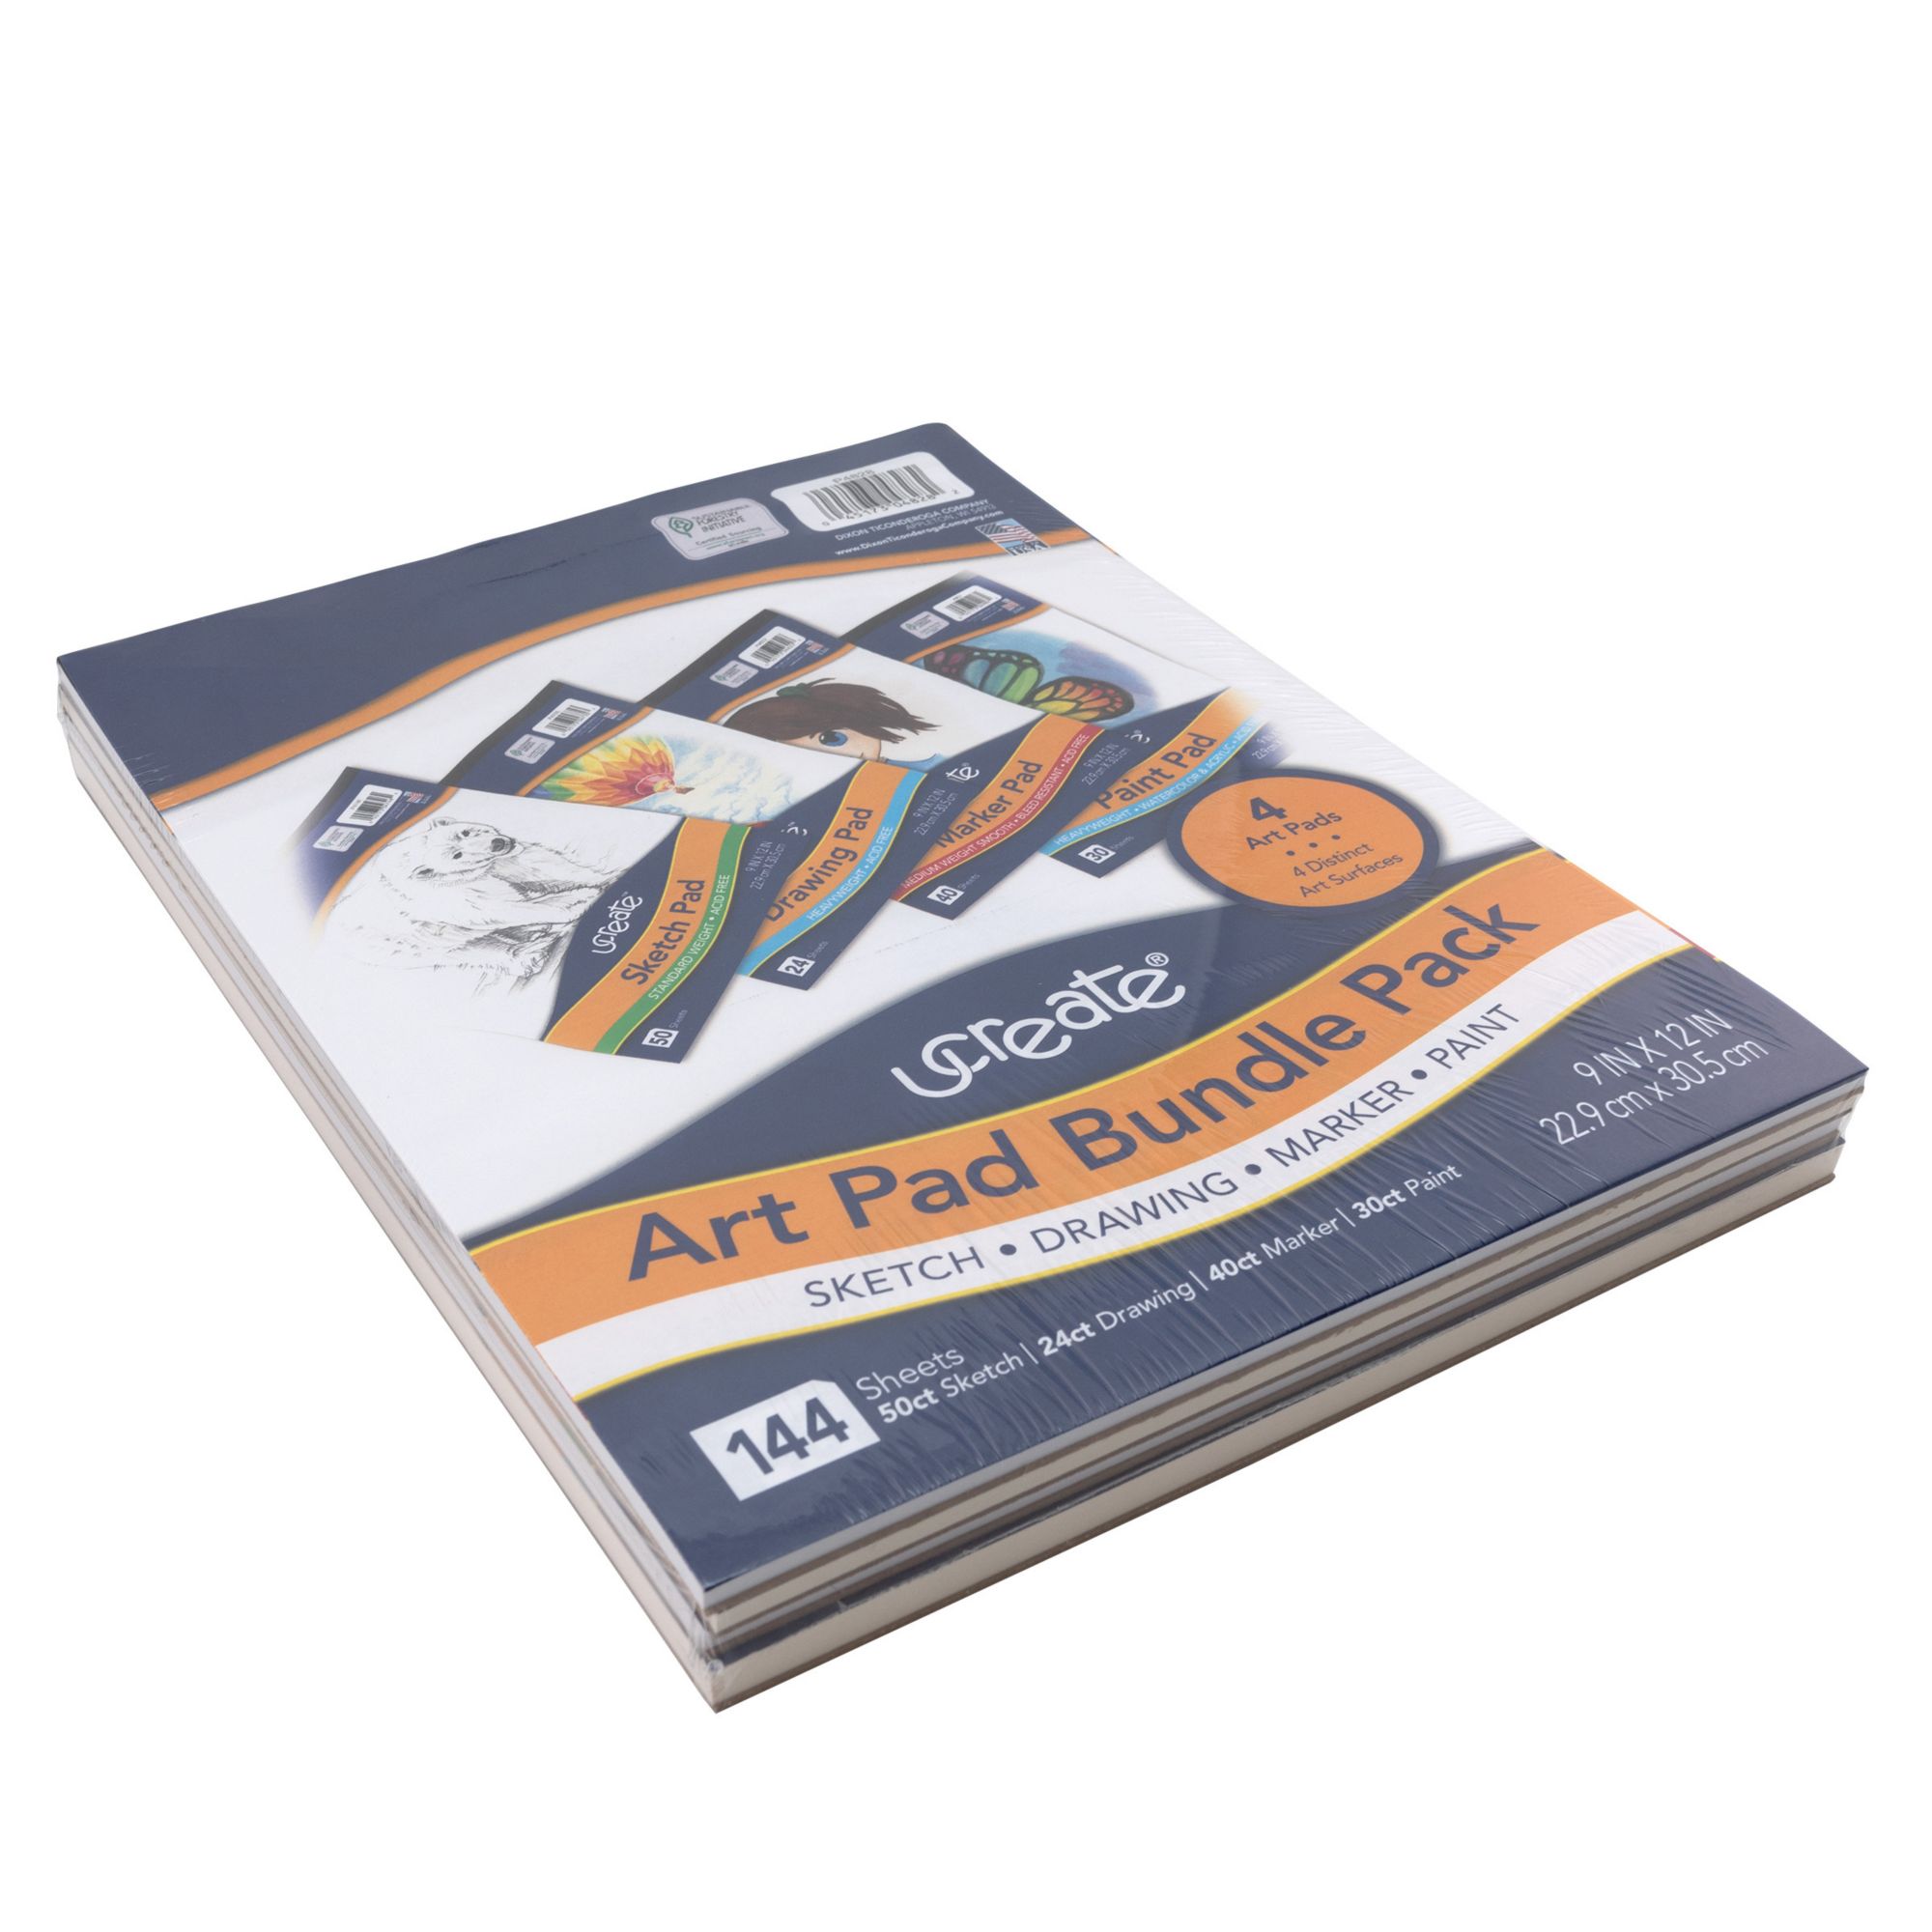 44pc Drawing & Sketching Art Set Pro Artist Kit, 4 Sketch Pads